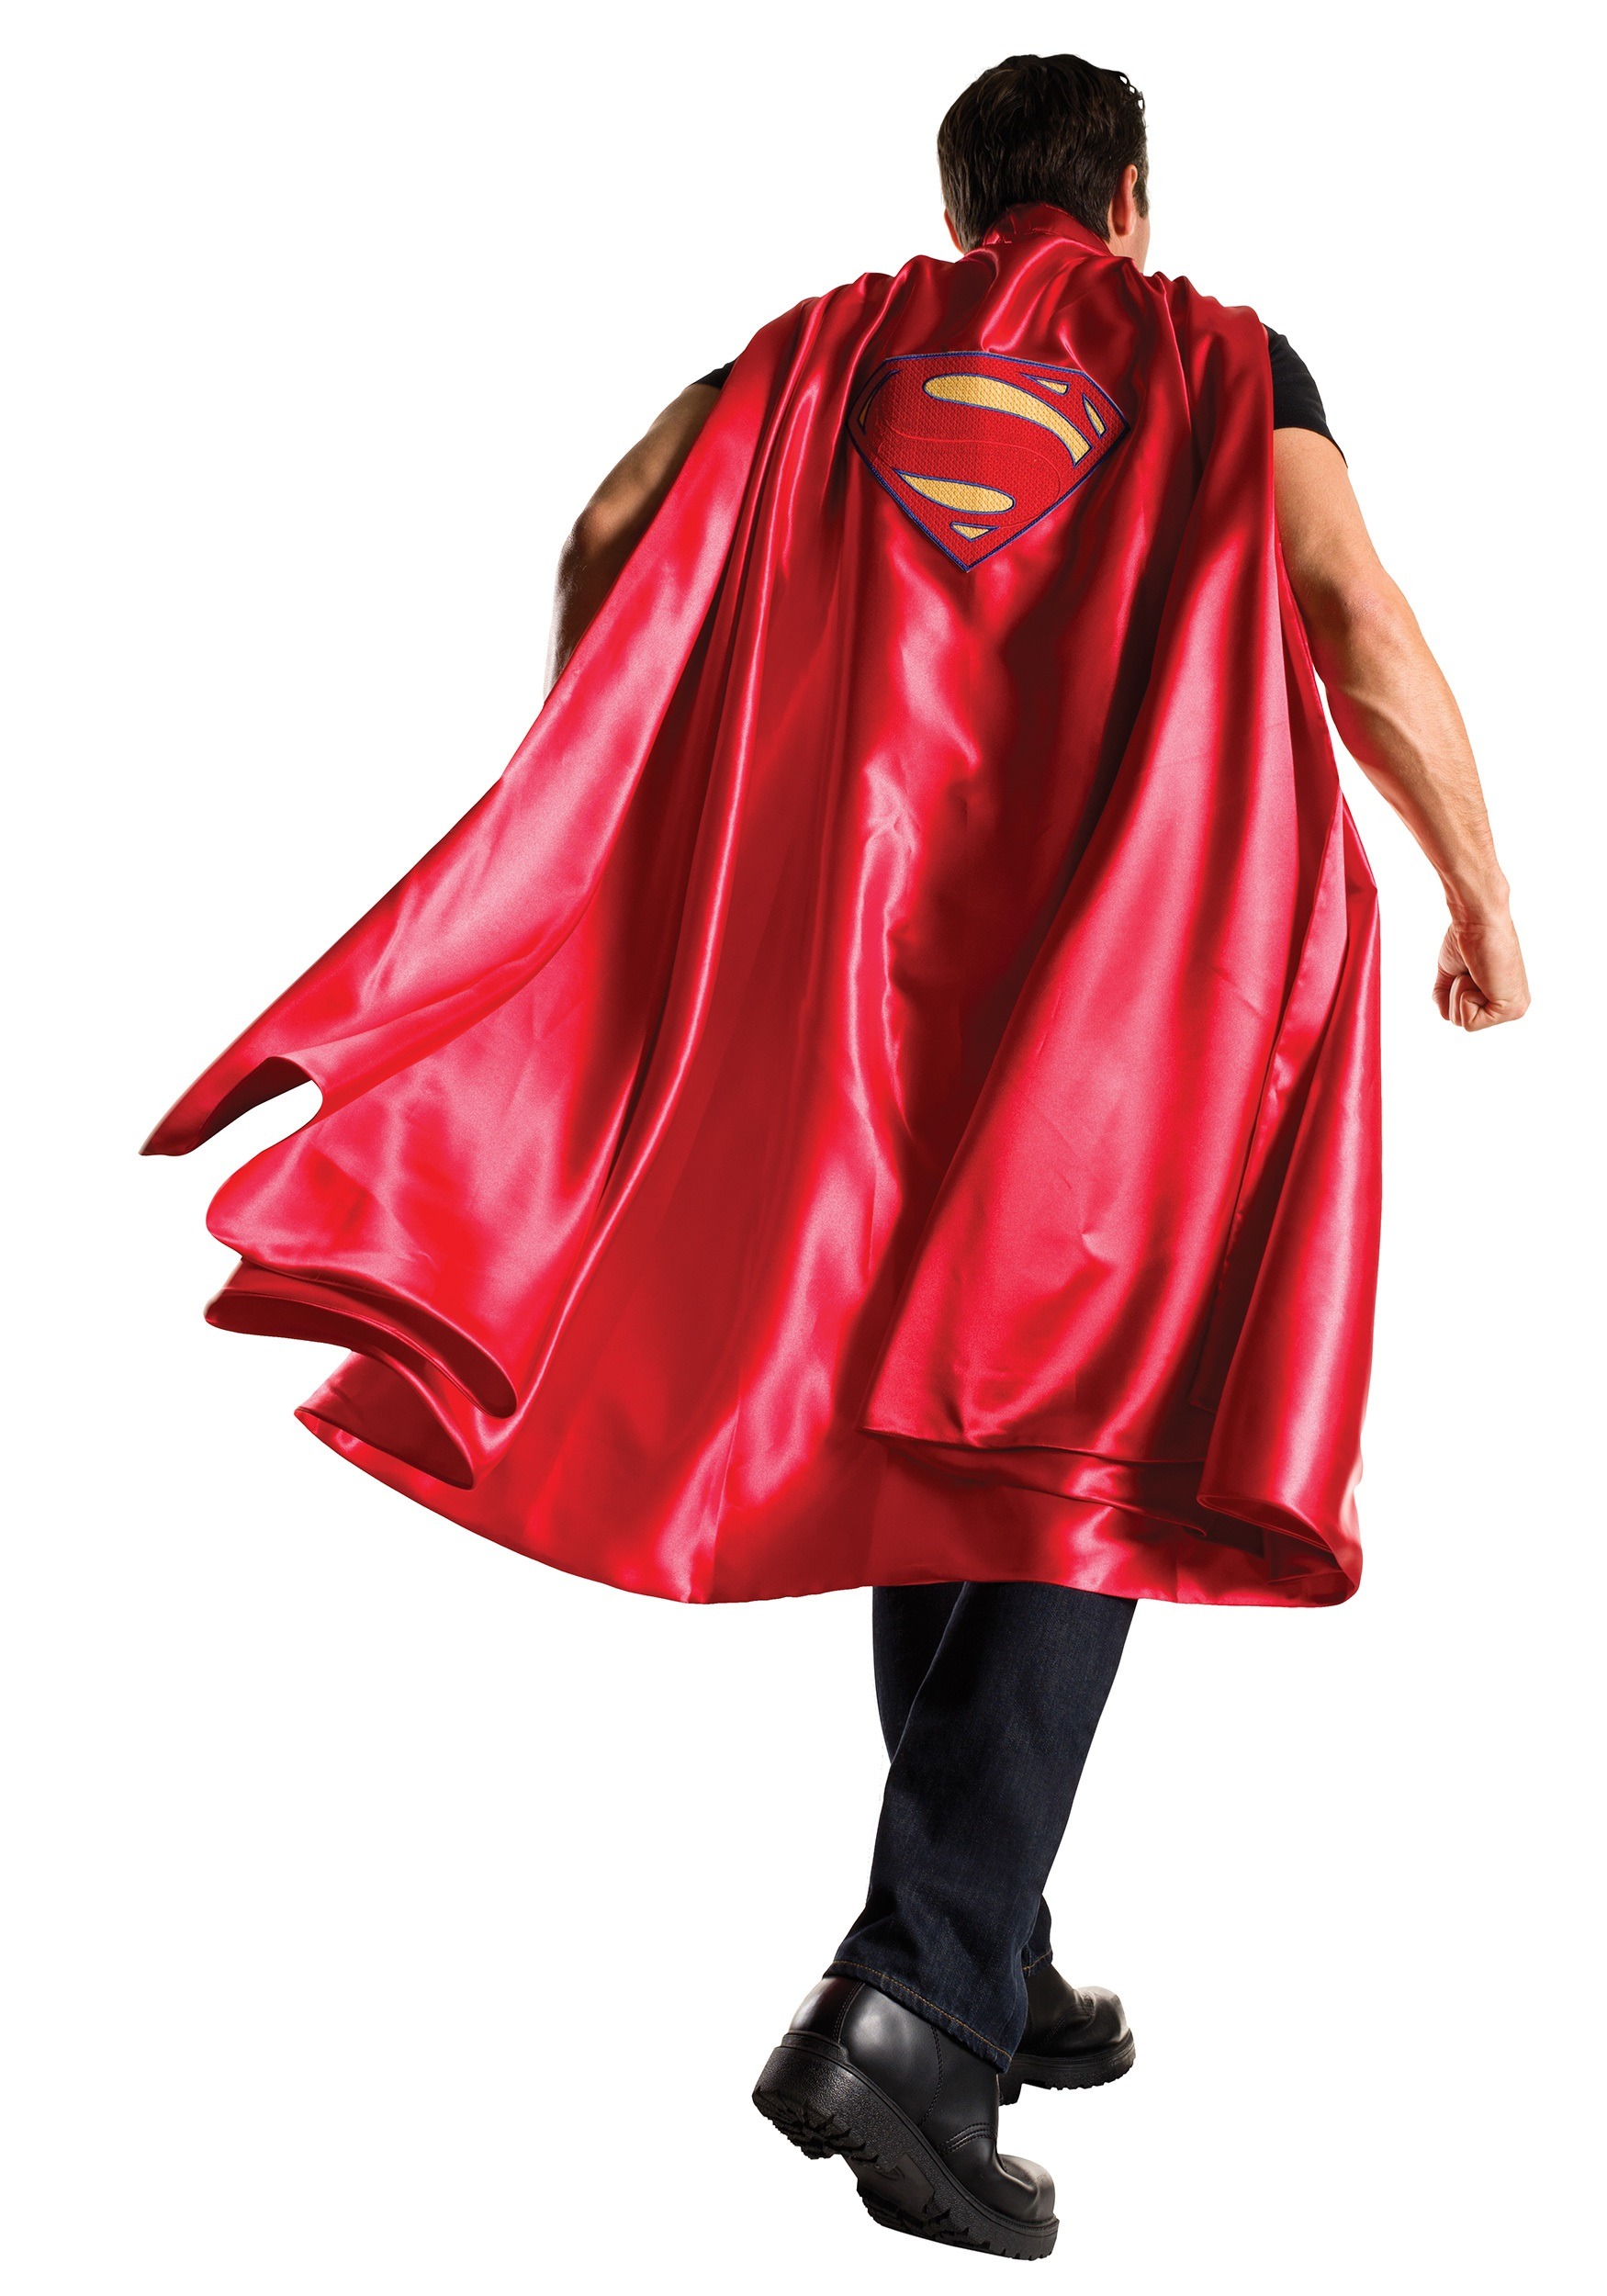 Superman I - location de costume adulte